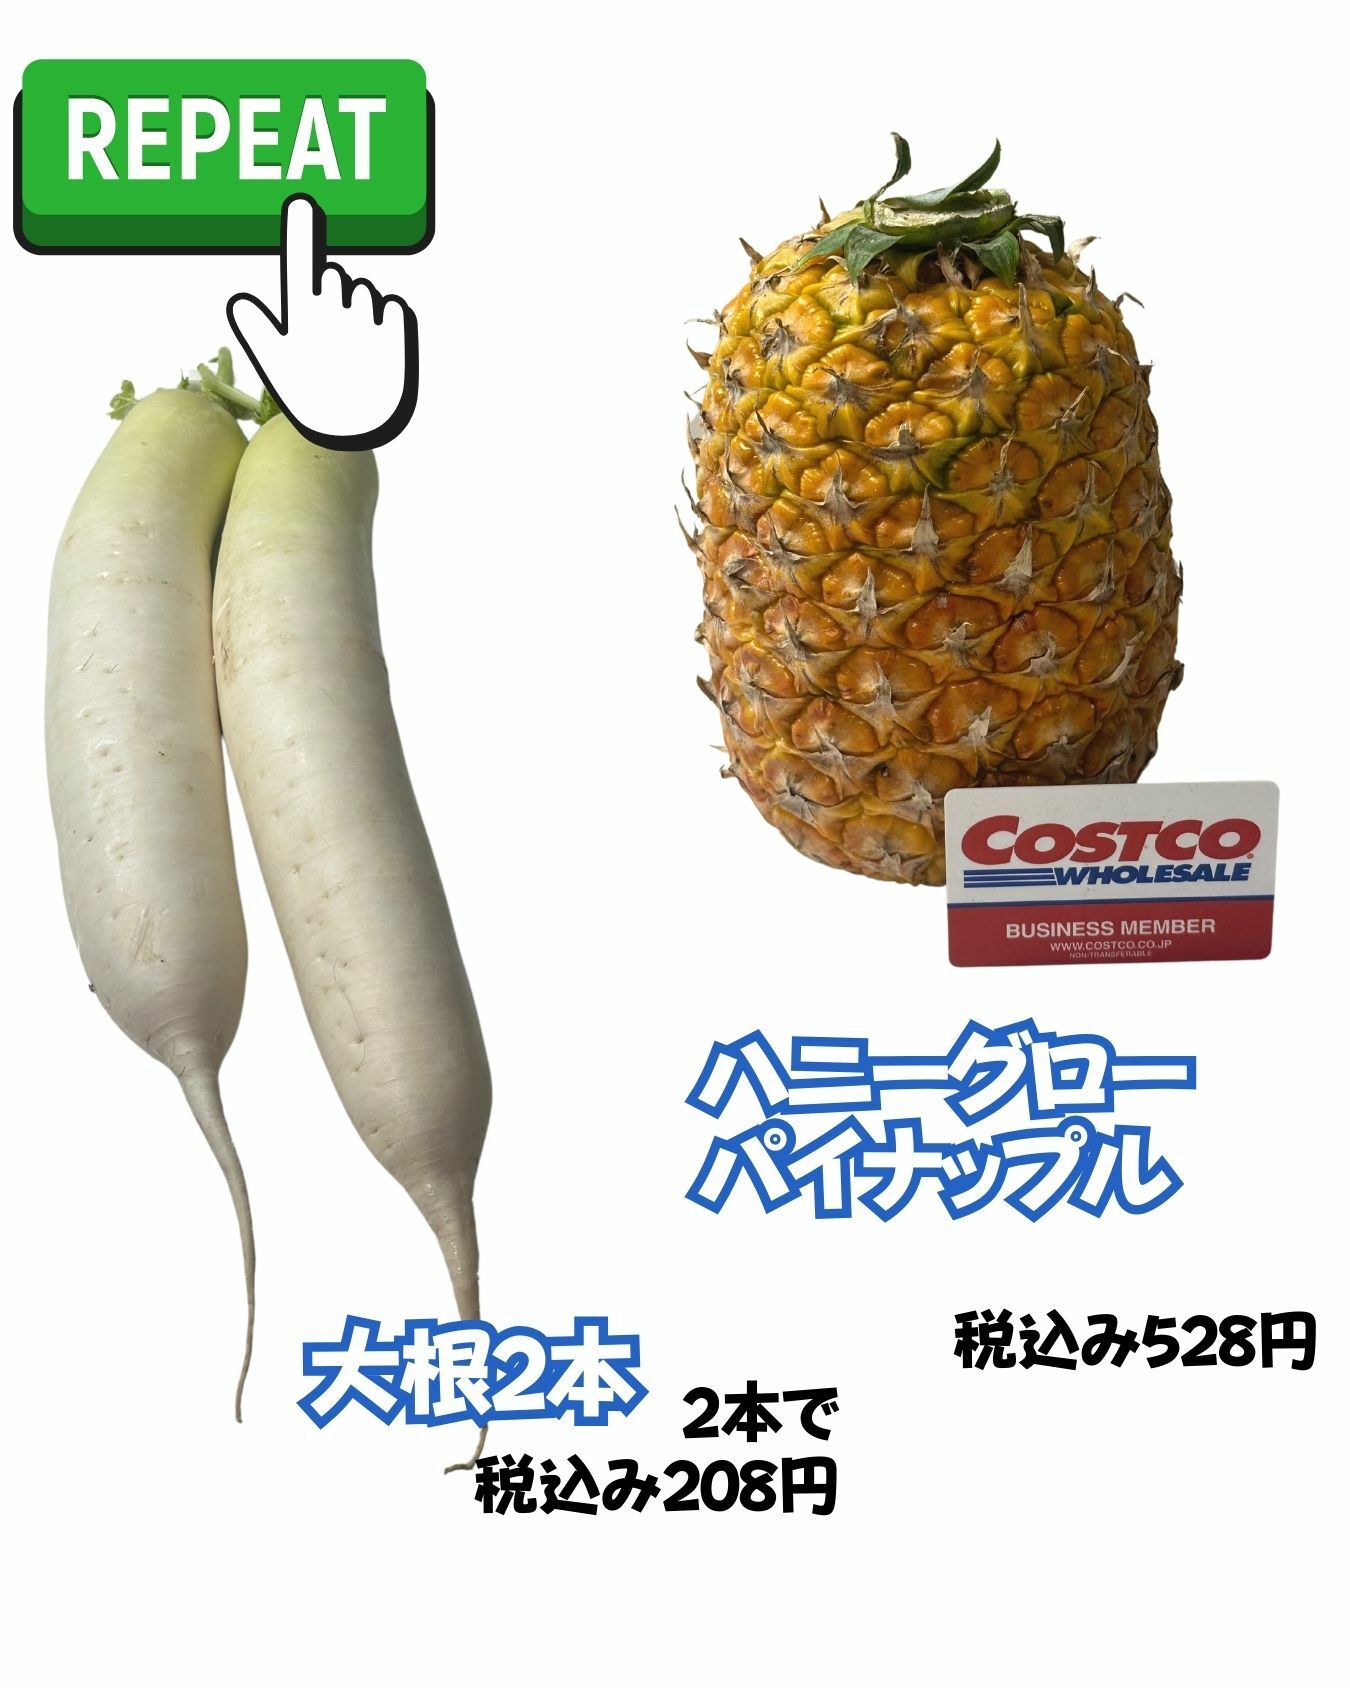 【コストコ】大根とハニーグローパイナップルがお買い得でした